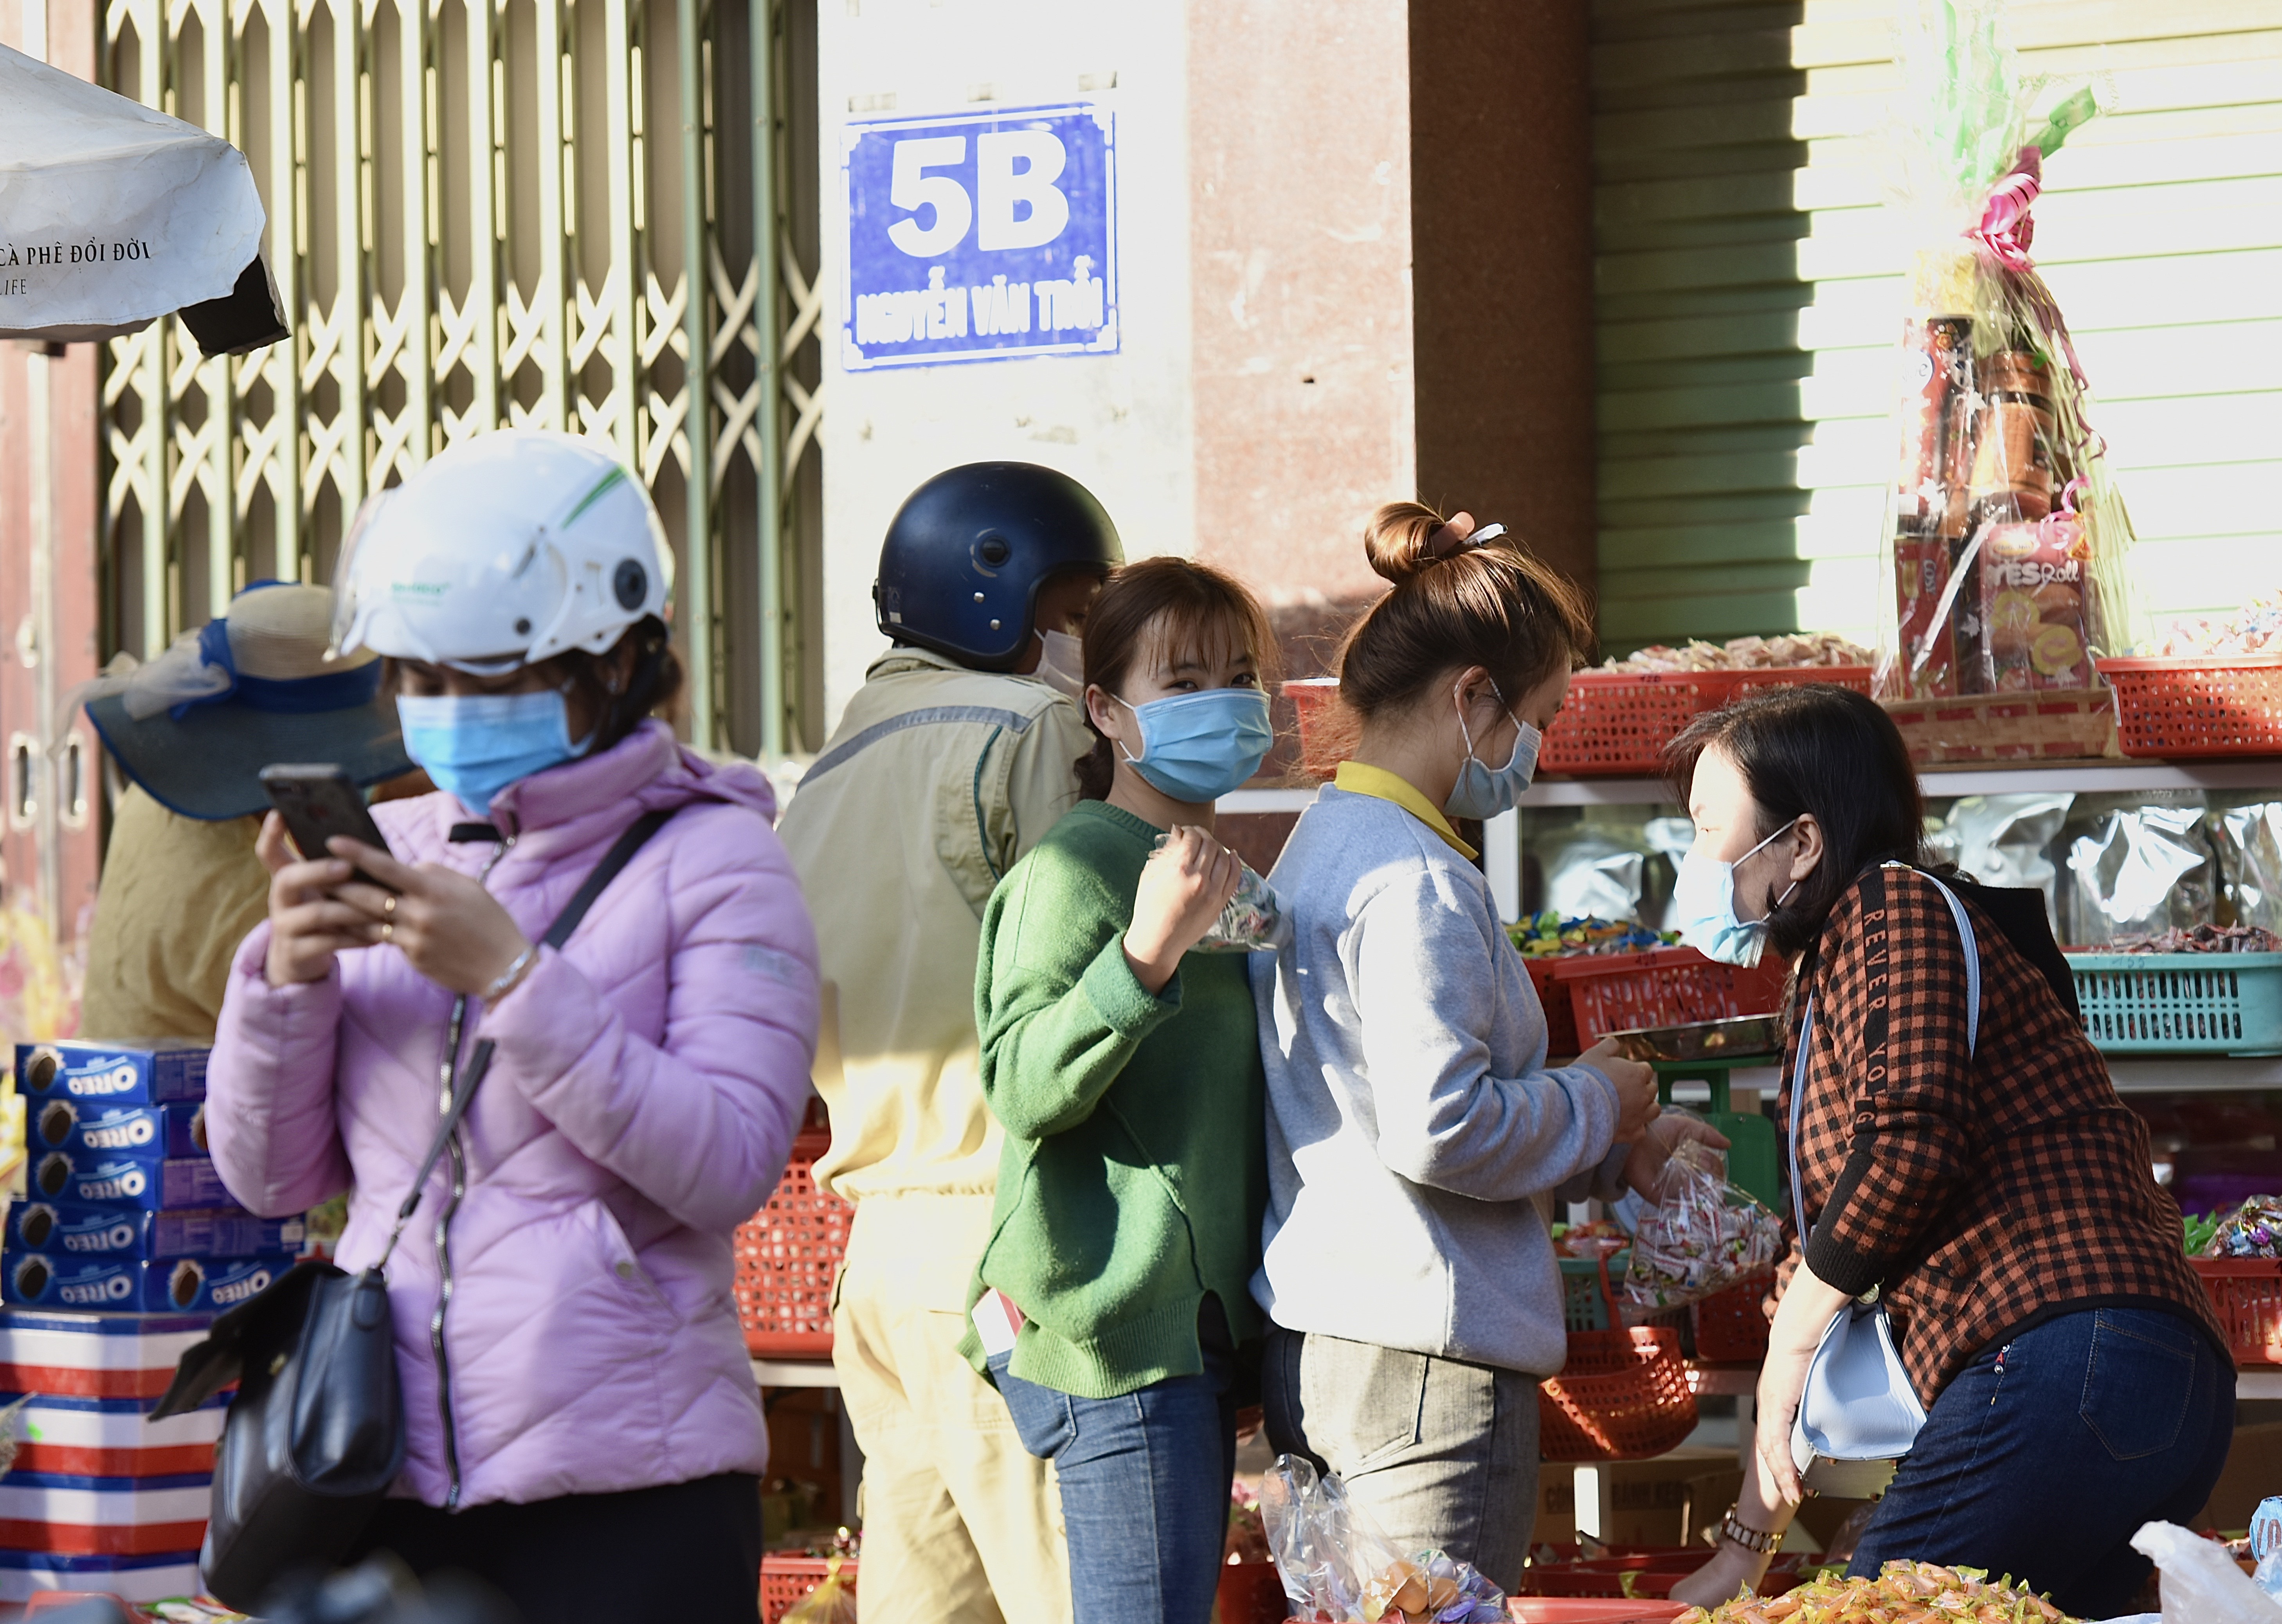 Cả người mua lẫn người bán đều chấp hành đúng chủ trương mang khẩu trang để phòng dịch tại cửa hàng Hồng Nhung trên đường Nguyễn Văn Trỗi.